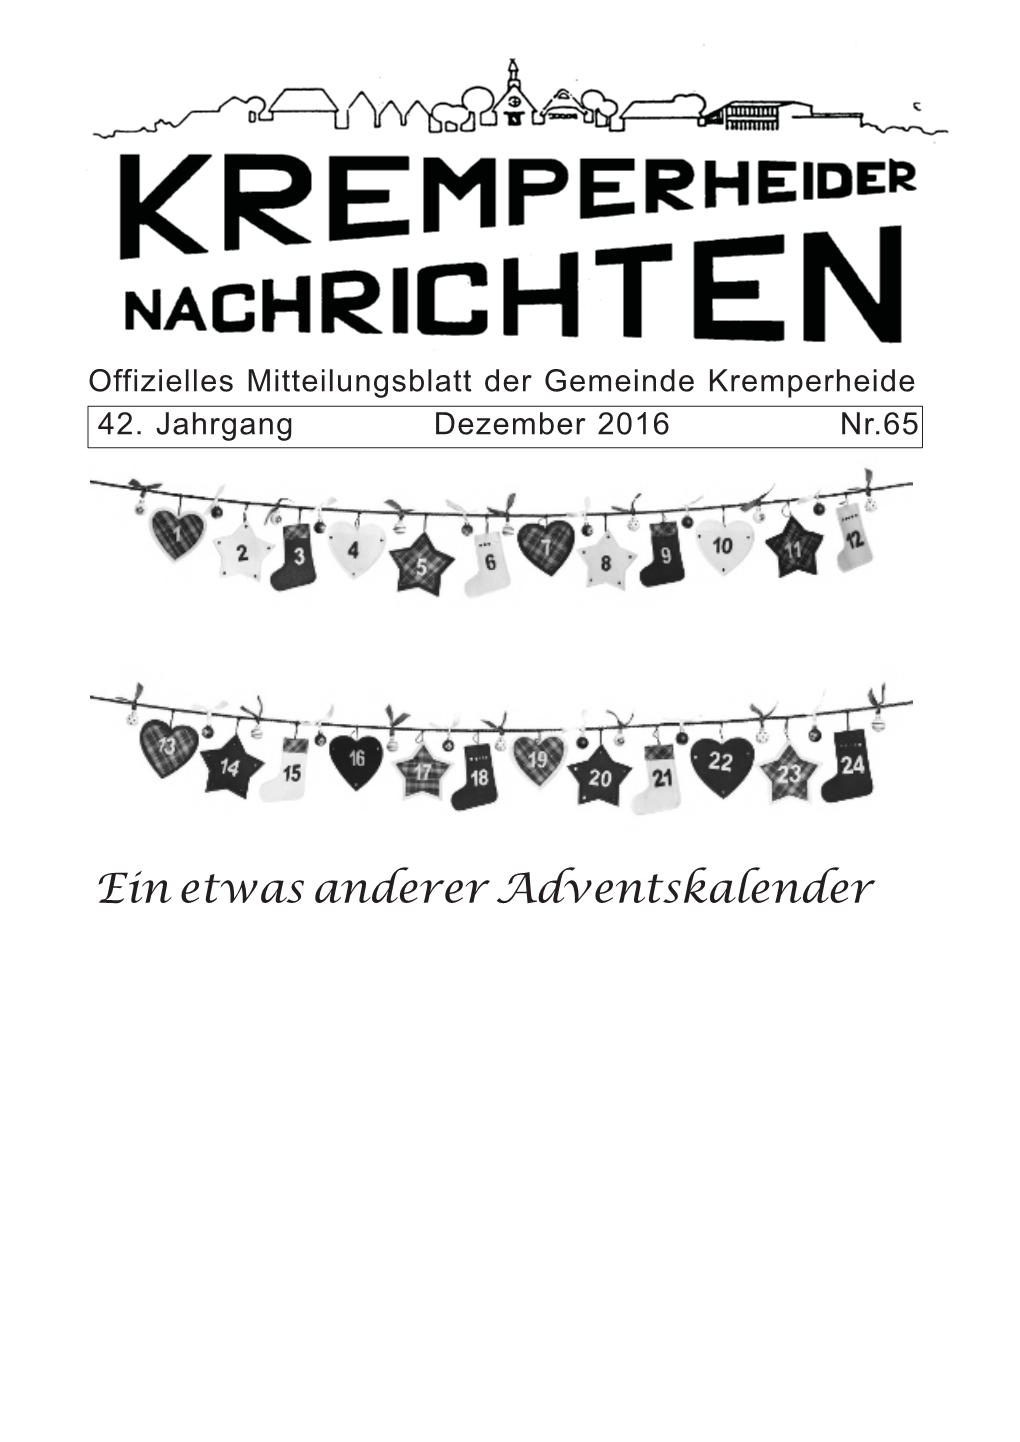 Ein Etwas Anderer Adventskalender Liebe Mitbürgerinnen Und Mitbürger Der Gemeinde Kremperheide, Das Jahr 2016 Neigt Sich Dem Ende Zu